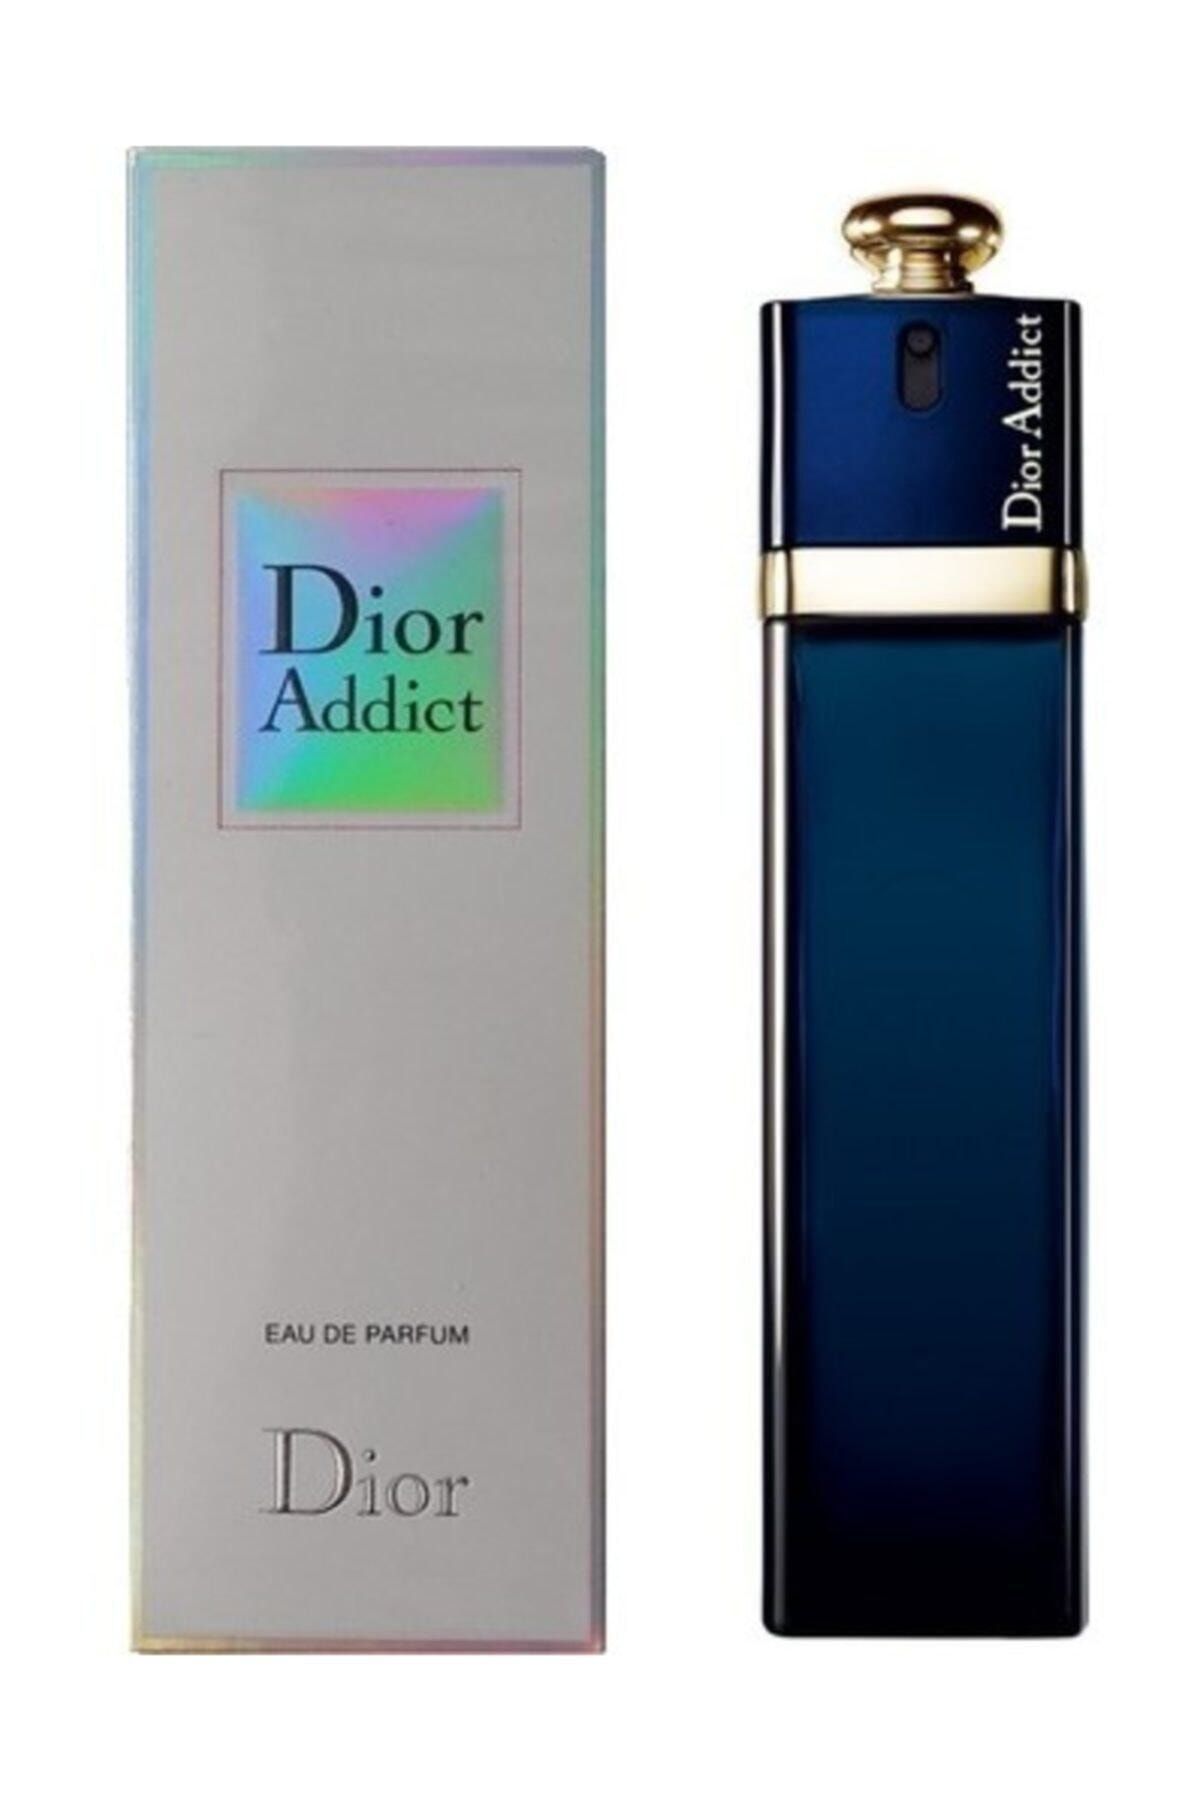 Dior addict цены. Christian Dior Addict Eau de Parfum. Christian Dior Addict Eau de Parfum 100ml. Dior Addict 50ml EDP. Christian Dior "Dior Addict" 100 ml.